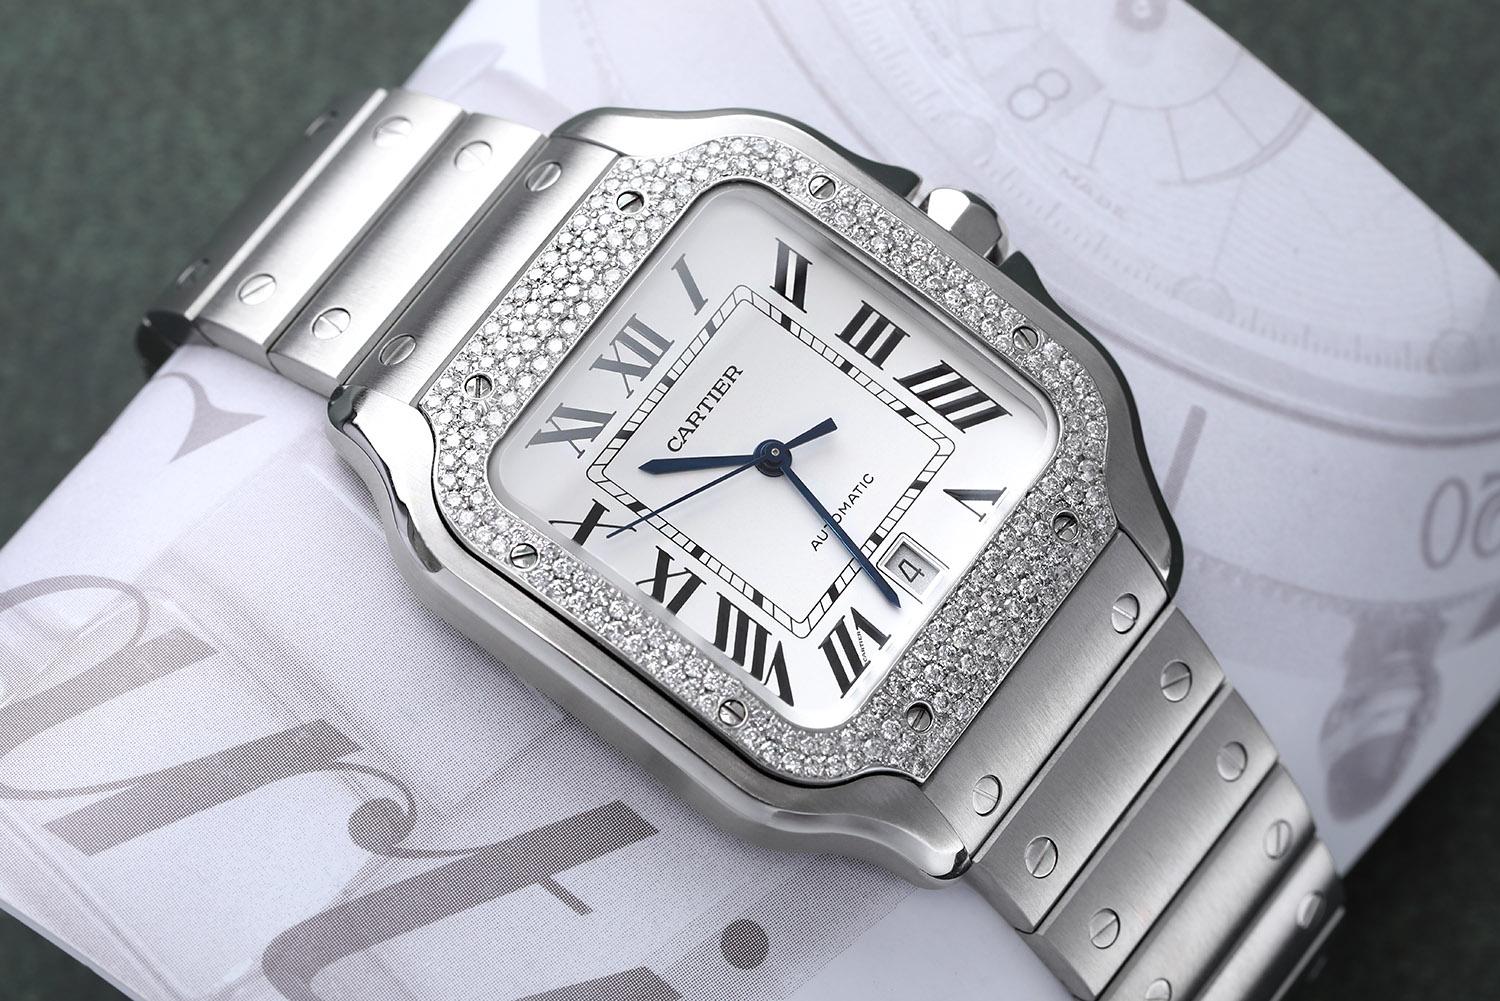 Cartier Santos große Edelstahl-Uhr mit benutzerdefinierten Diamant-Lünette Fabrik weißen römischen Ziffern Zifferblatt
UHR KOMMT MIT EINEM ZUSÄTZLICHEN HELLBRAUNEN LEDERARMBAND! Mechanisches Uhrwerk mit automatischem Aufzug, Kaliber 1847 MC.